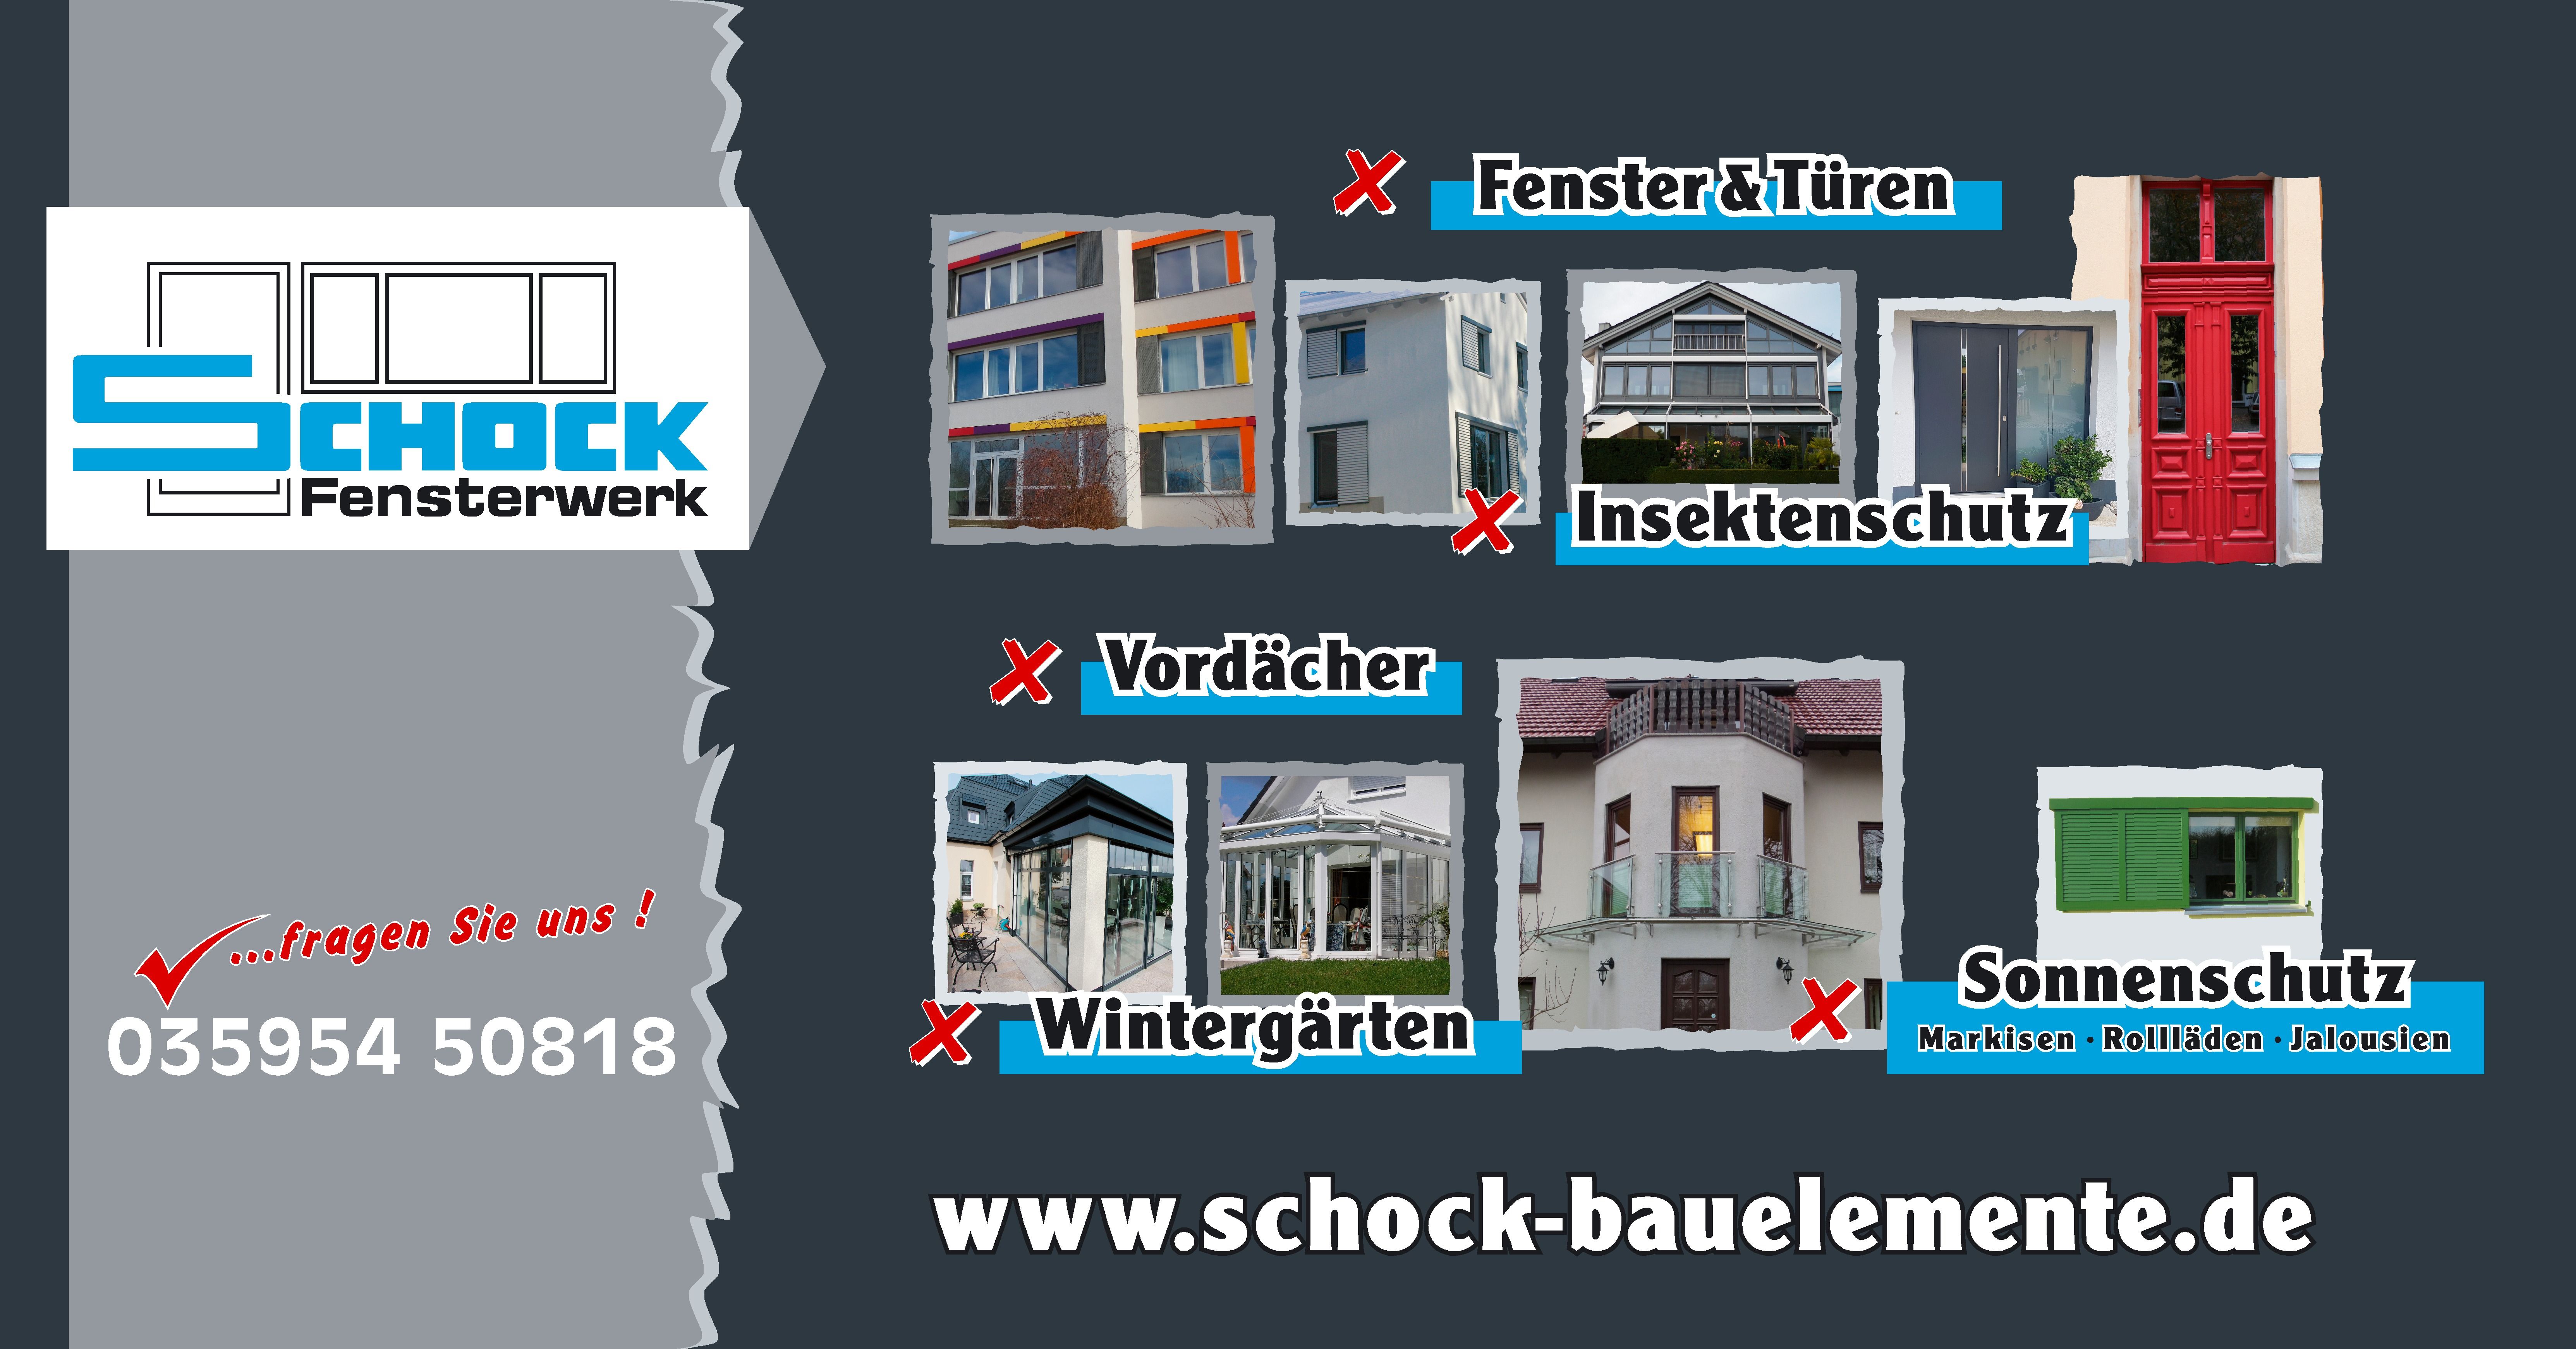 Schock Fensterwerk Bauelemente GmbH